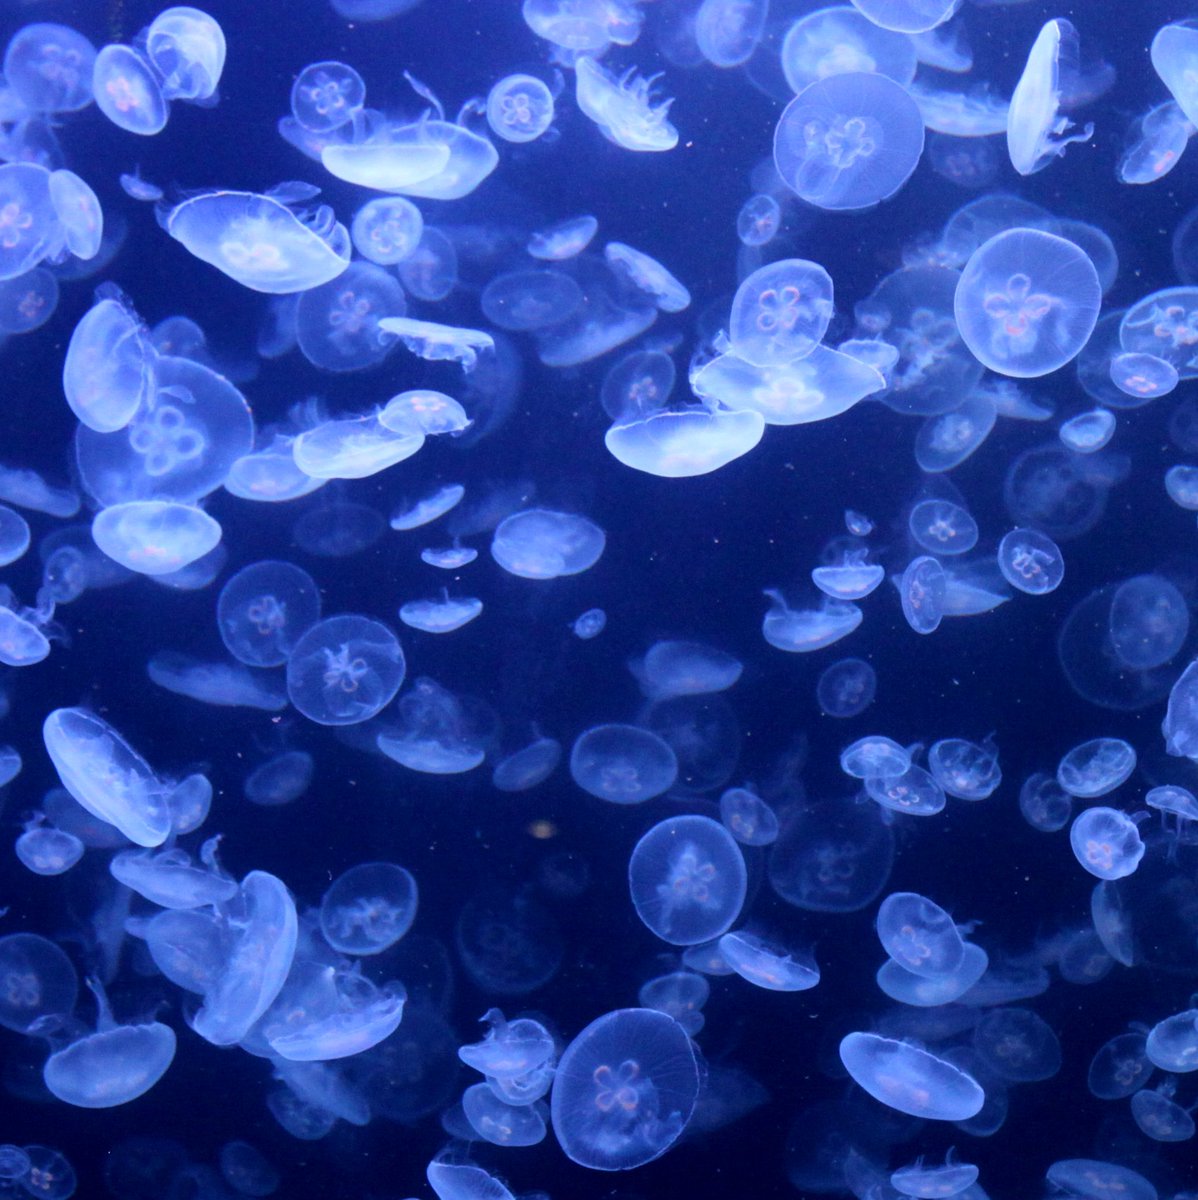 加茂水族館のクラゲ。神秘的でした🥰
#山形 #写真好きな人と繋がりたい #ファインダー越しの私の世界 #キリトリセカイ #加茂水族館 #クラゲ #lovers_nippon #naturephotography #naturelovers #japan #japan_art_photography  #landscape  #jellyfish #underwaterpics #marinebiologyshots #blueplanet